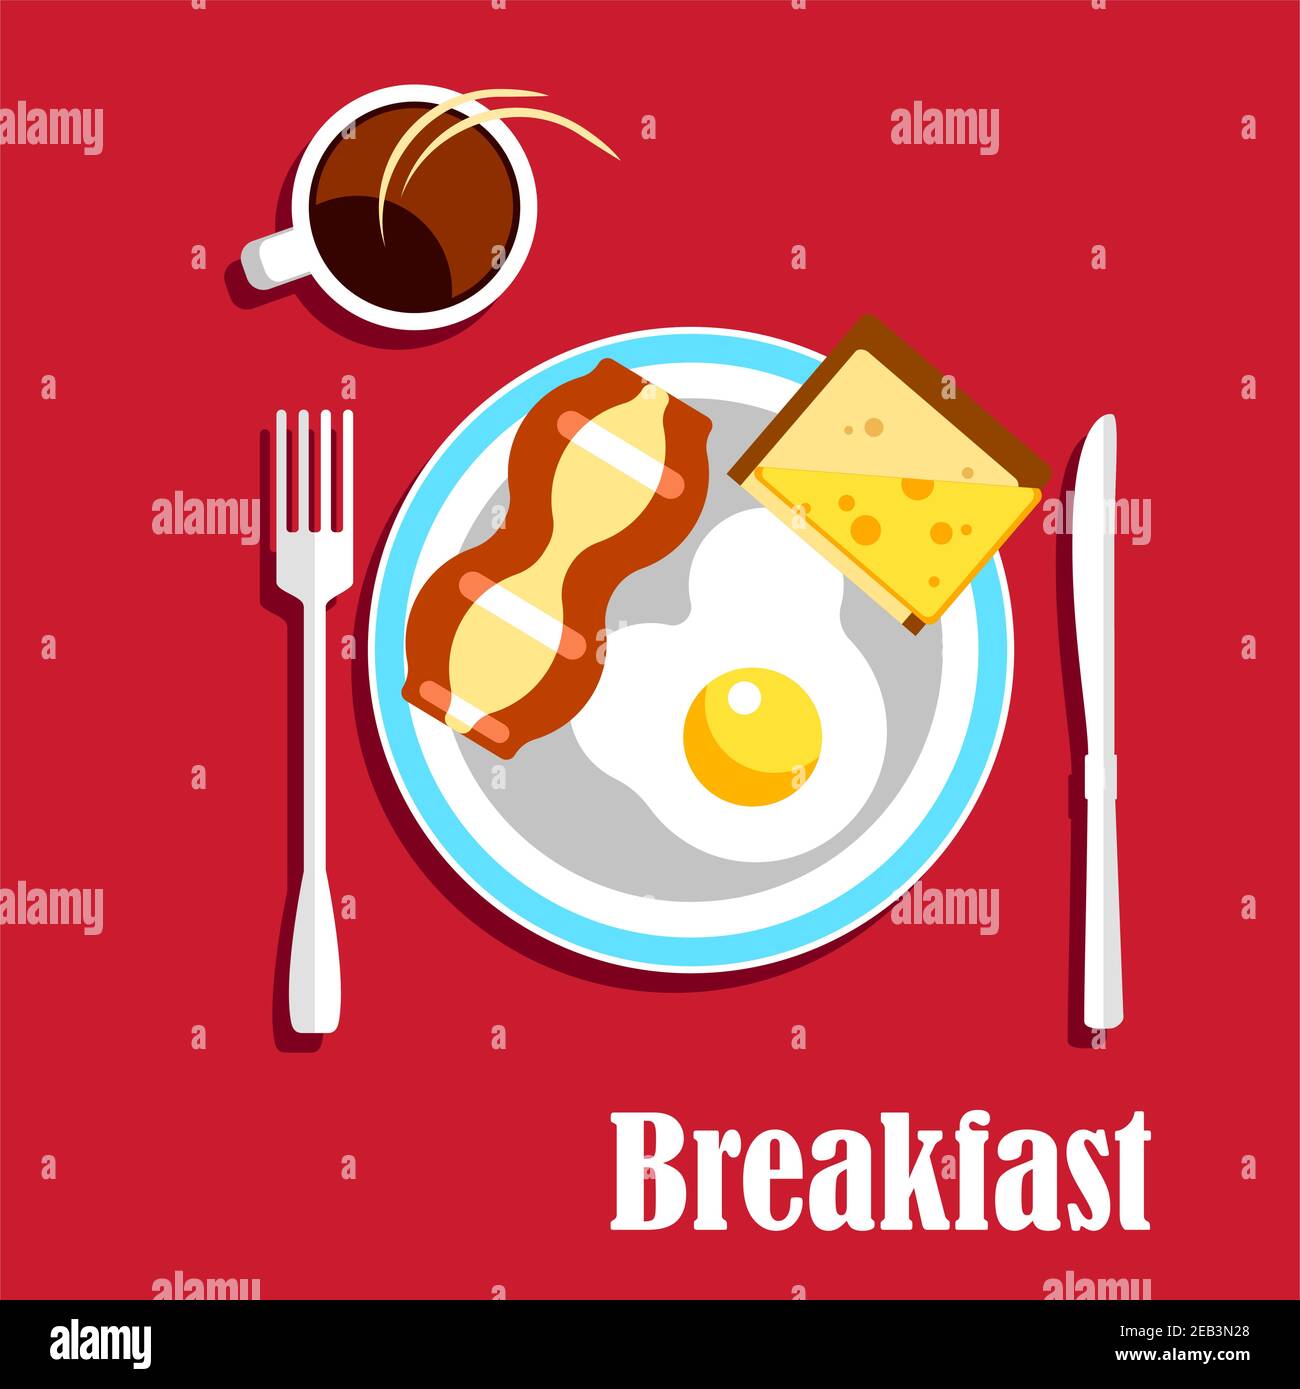 Tradizionale menu per la colazione inglese con tazza di caffè caldo, uova fritte con fetta croccante di pancetta e sandwich con pane tostato e formaggio, serviti su Illustrazione Vettoriale